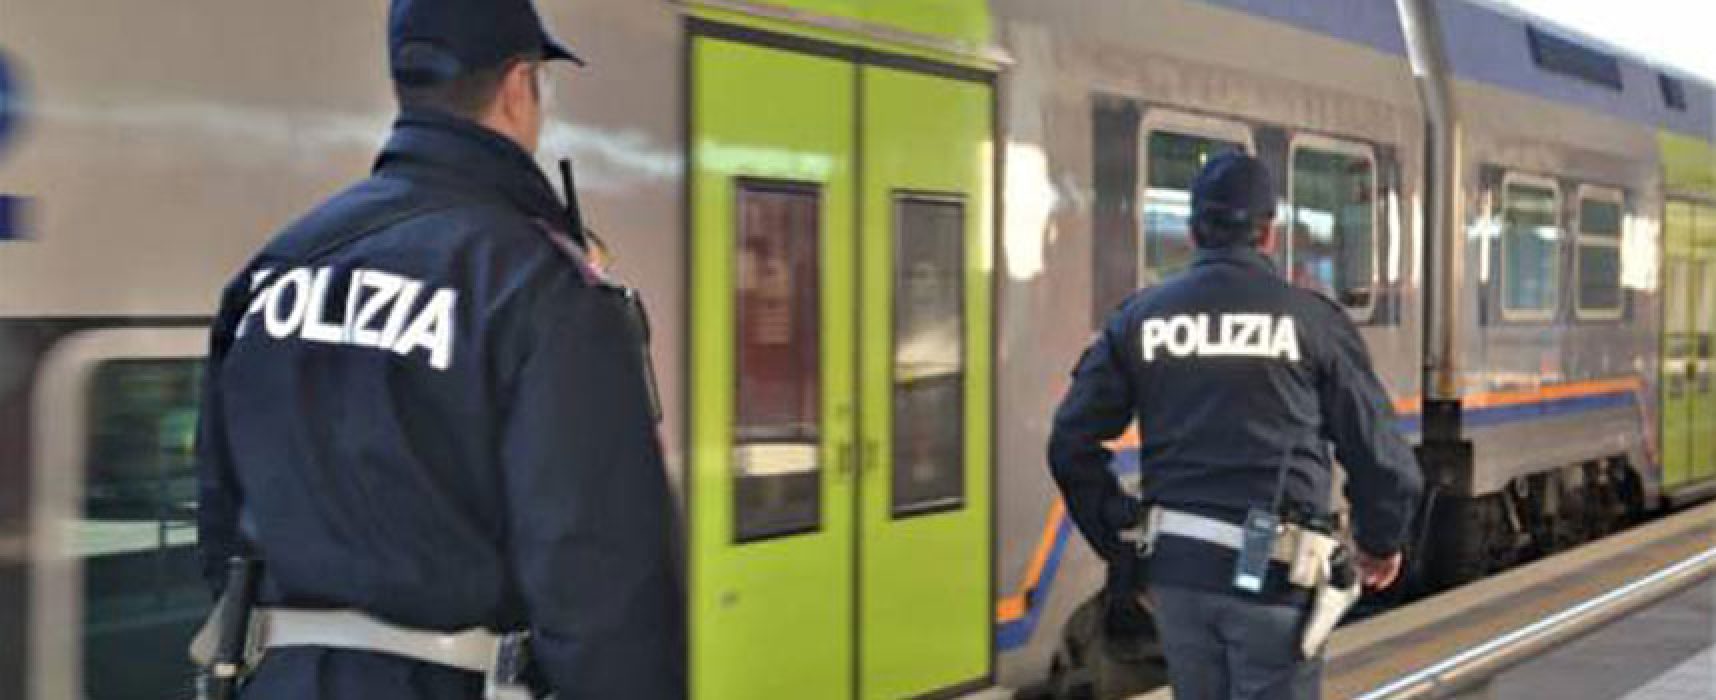 Polizia di Stato: un arresto nella stazione ferroviaria di Bisceglie, controlli ad oltre 300 ragazzi